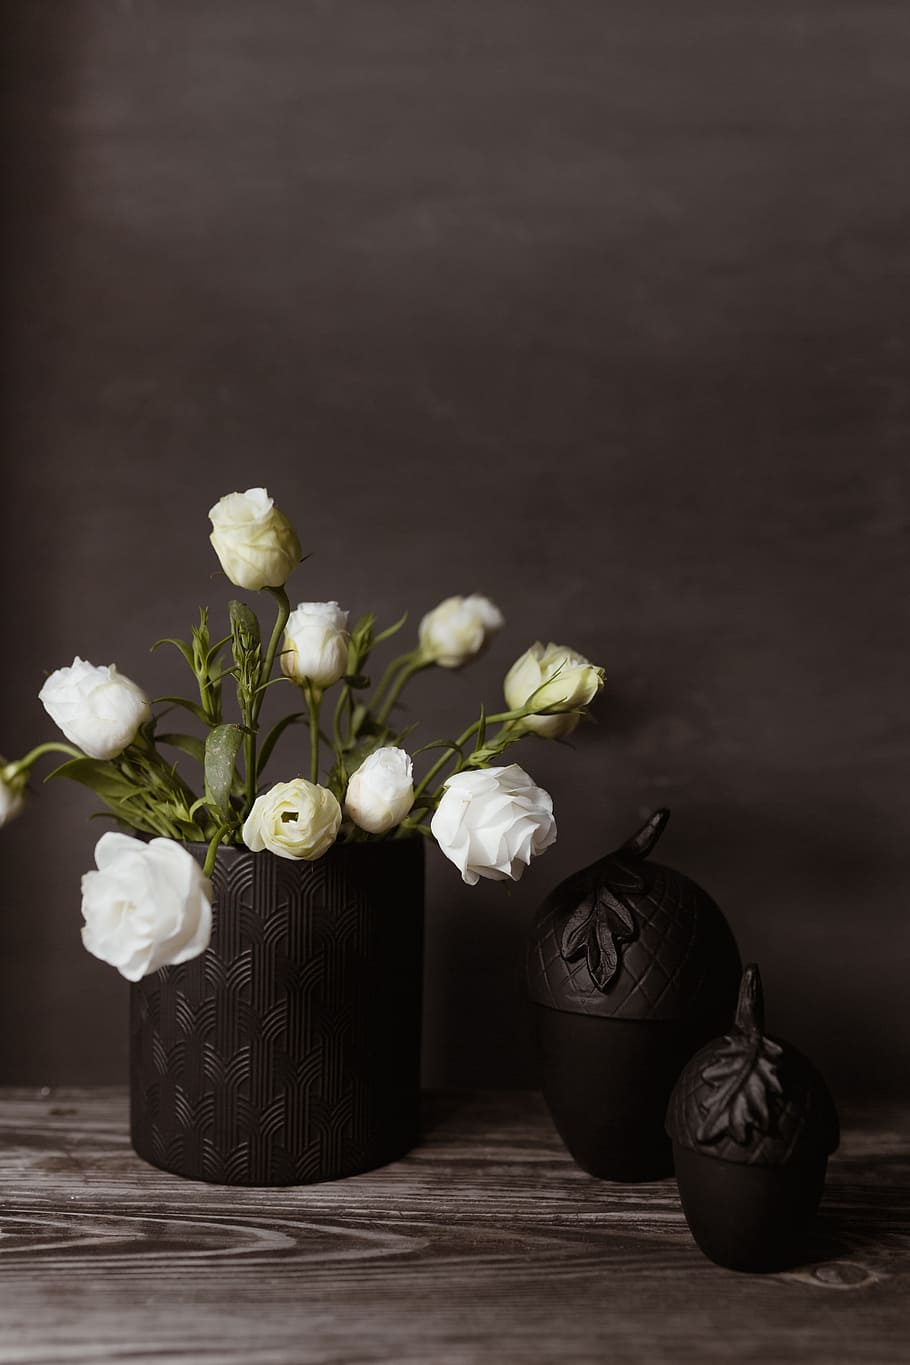 Dark Mood Home Decorations, Flowers, Pumpkin, Halloween, - Artificial Flower - HD Wallpaper 